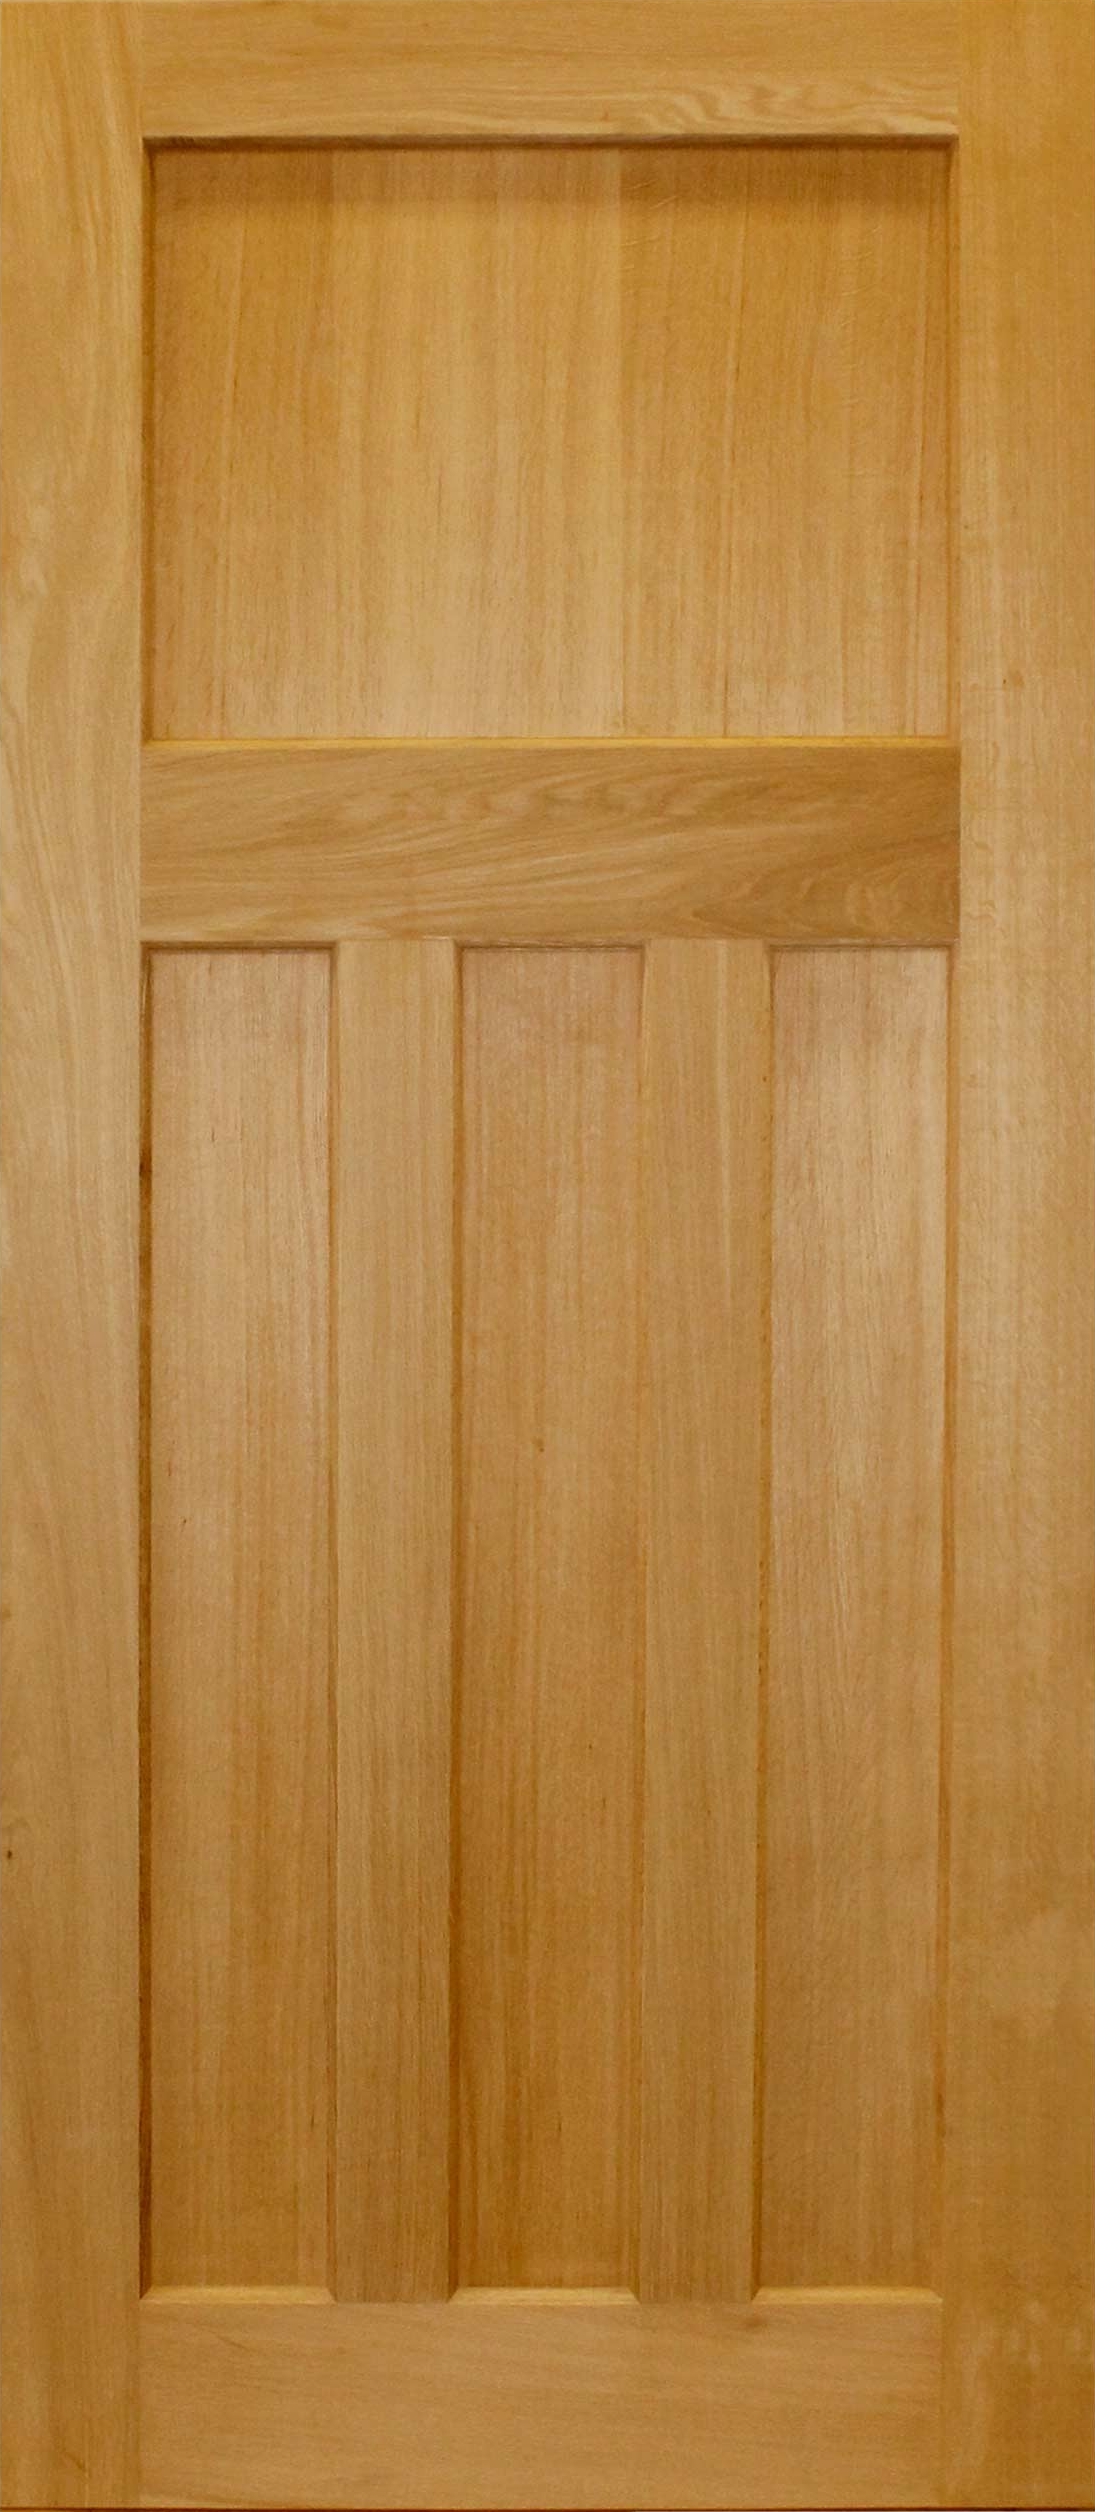 An image of 1930's Style Panelled Veneer Oak Door